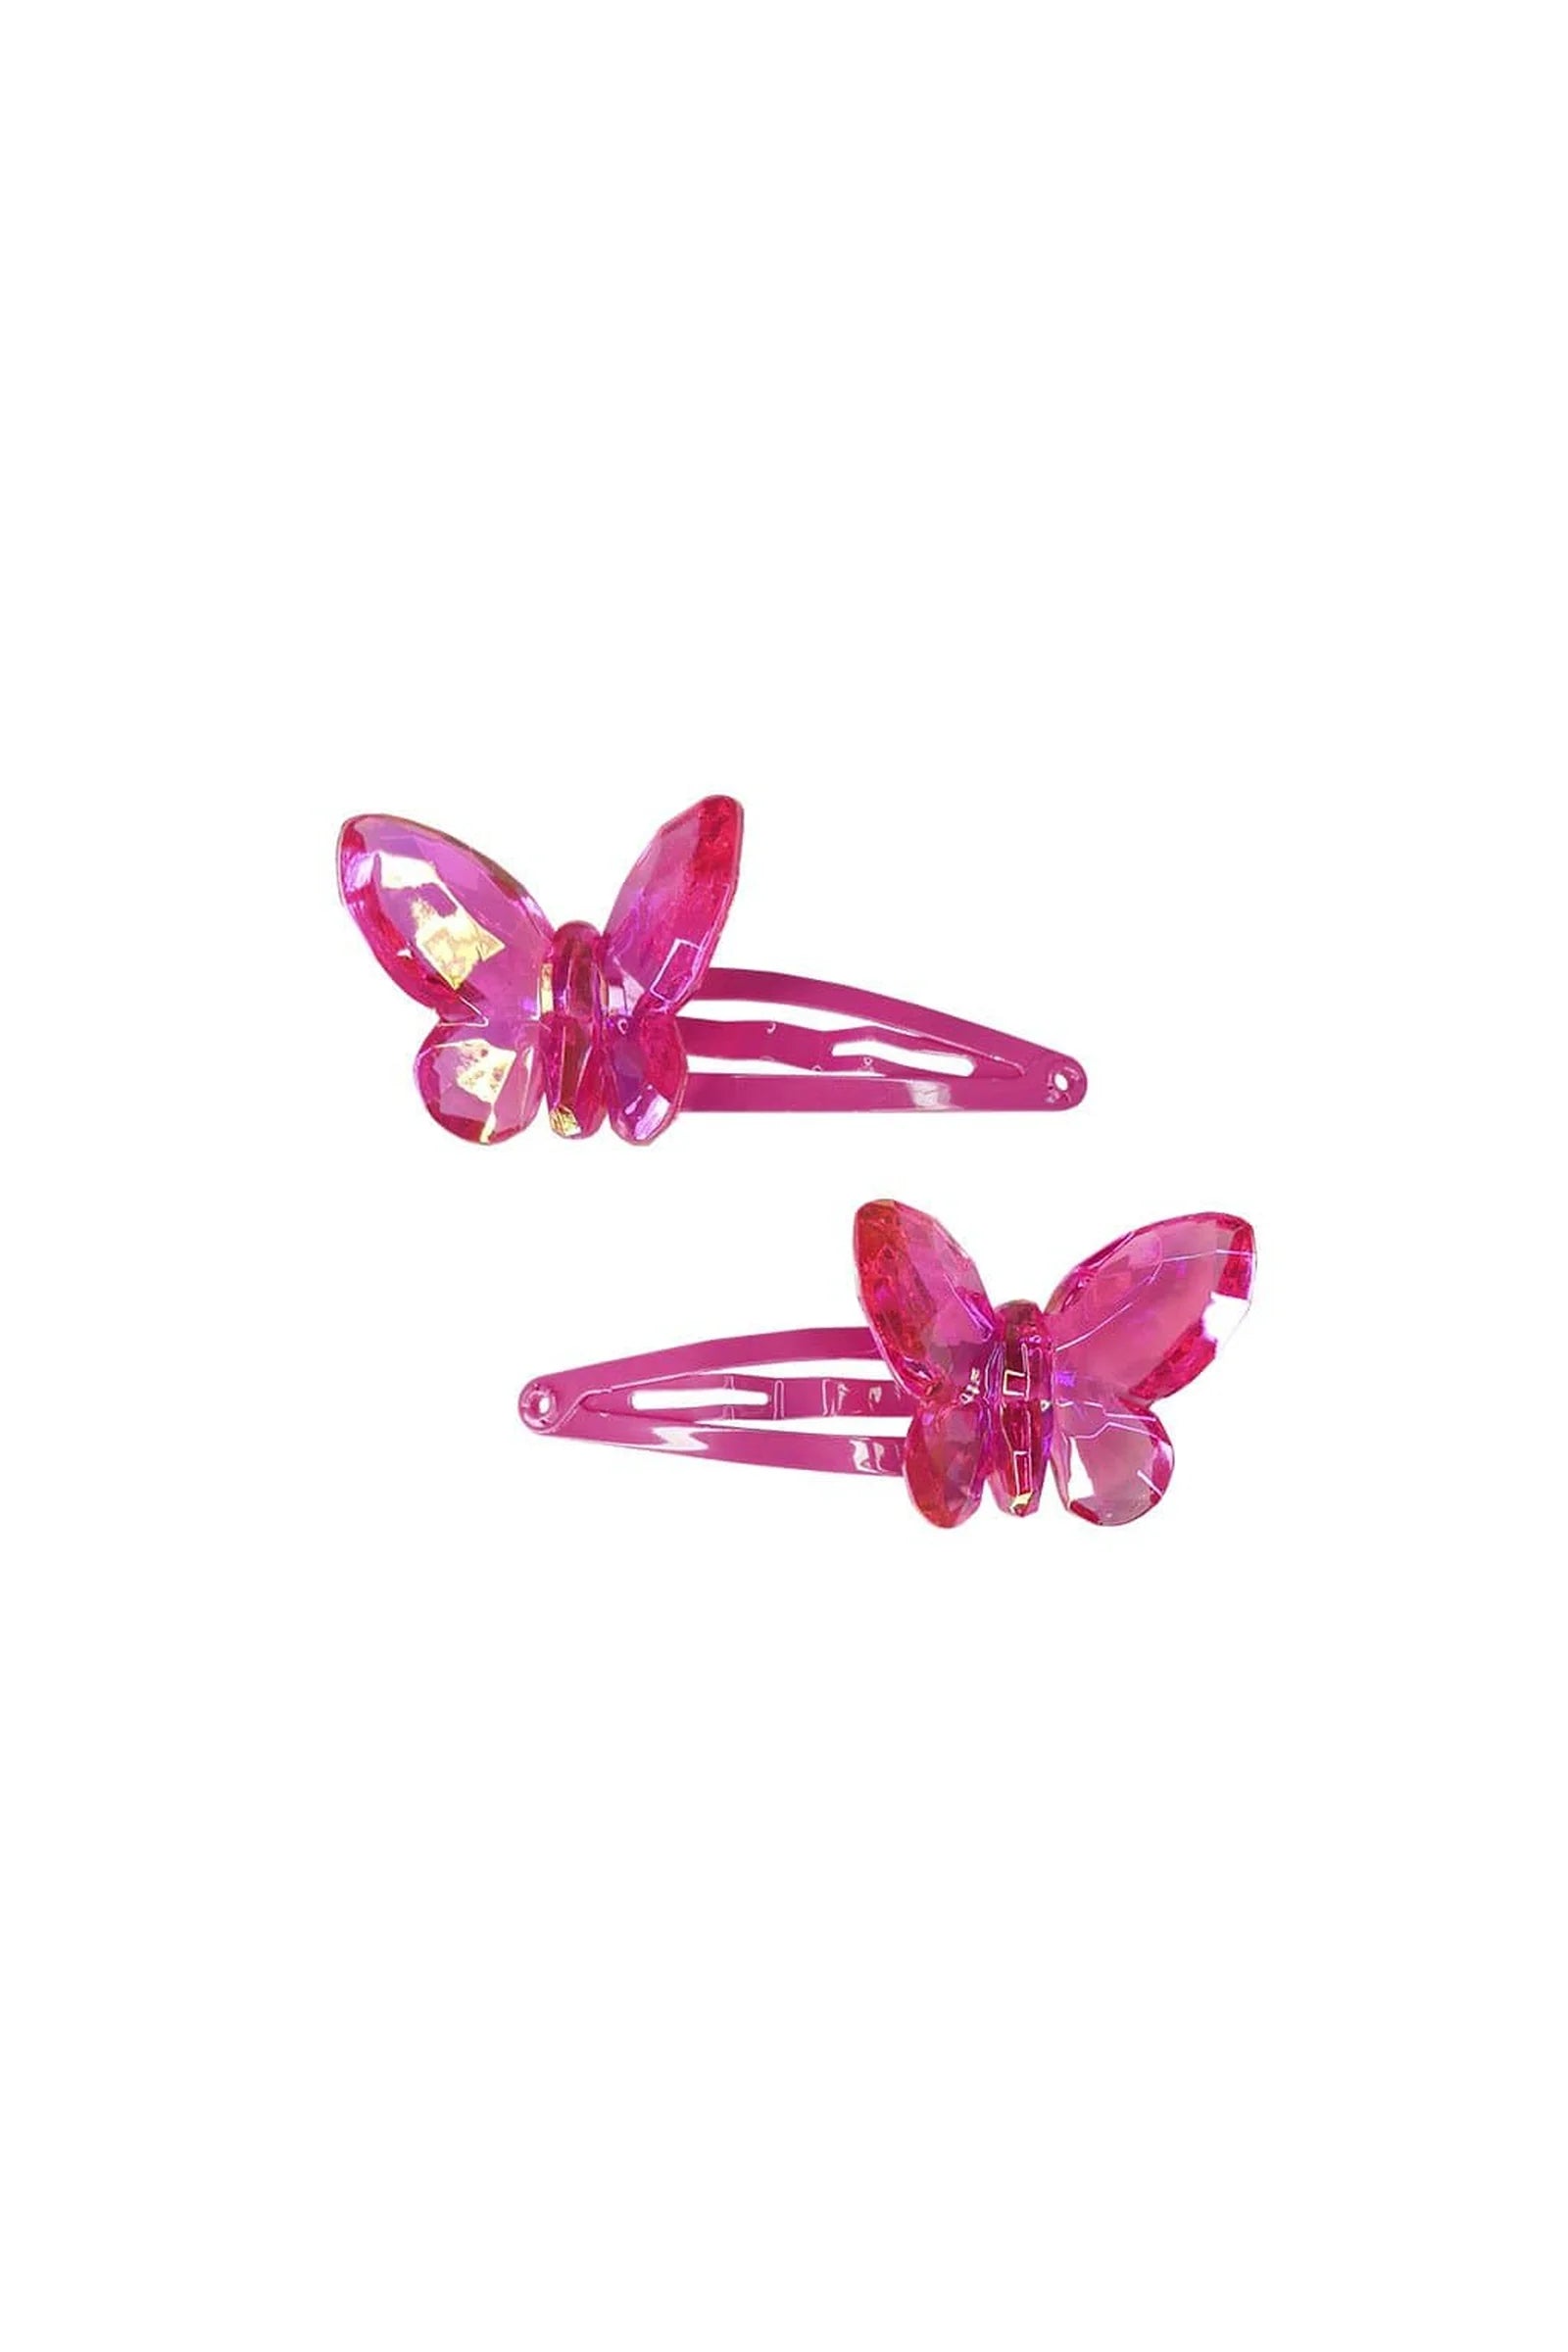 Pinces à cheveux papillons en cristal rose - Couleur PastelPincesGreat Pretenders